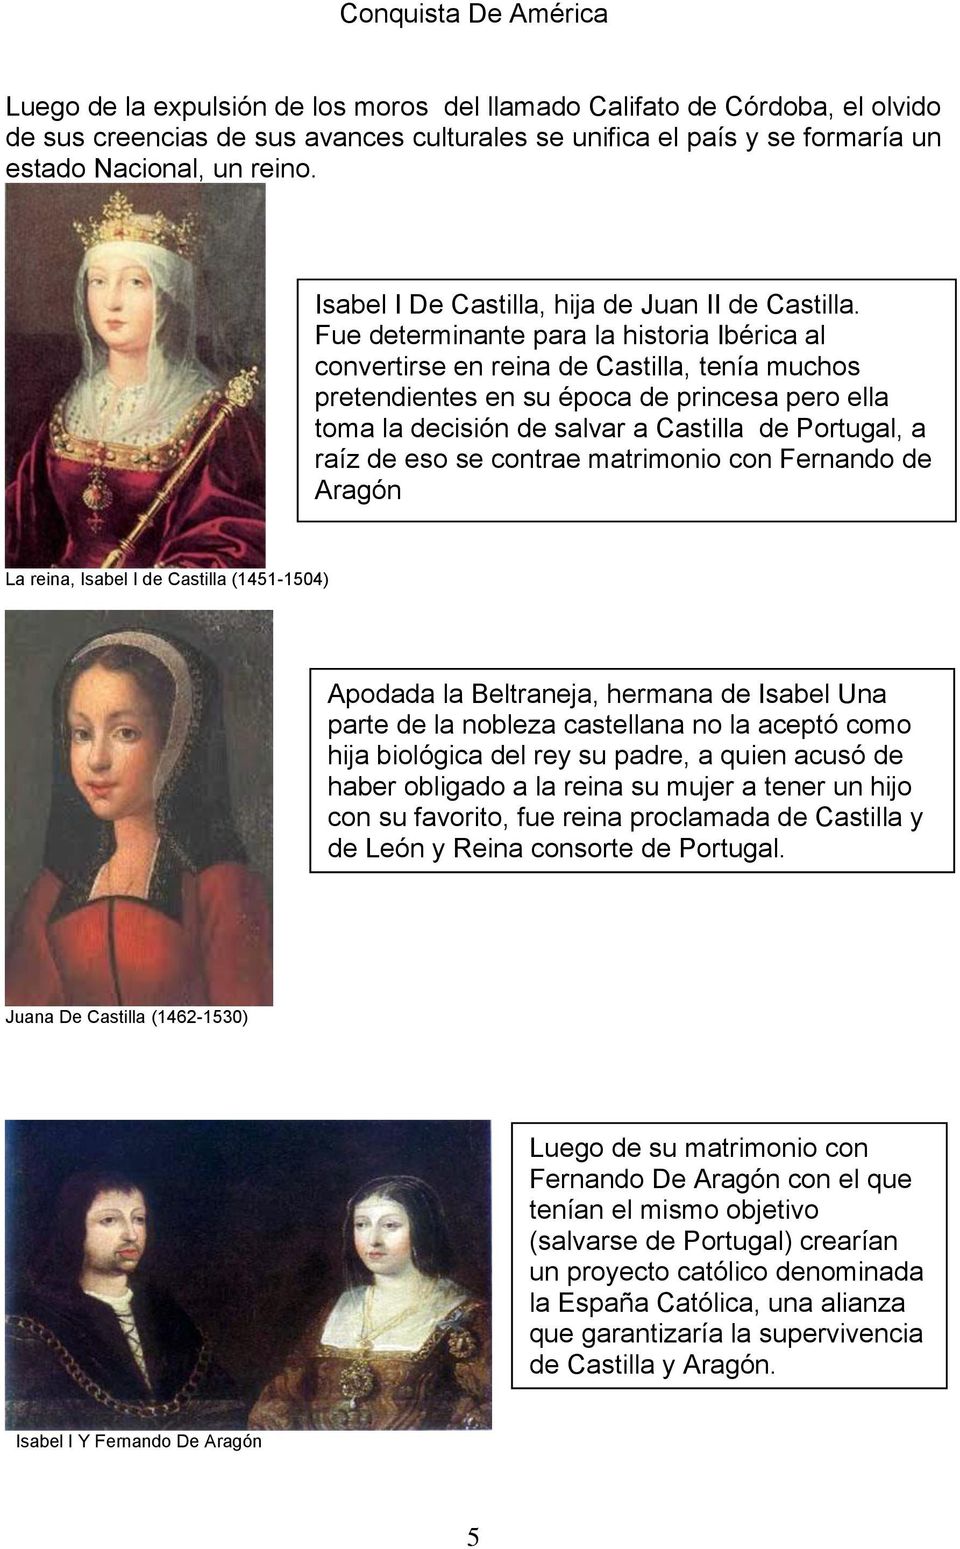 Fue determinante para la historia Ibérica al convertirse en reina de Castilla, tenía muchos pretendientes en su época de princesa pero ella toma la decisión de salvar a Castilla de Portugal, a raíz